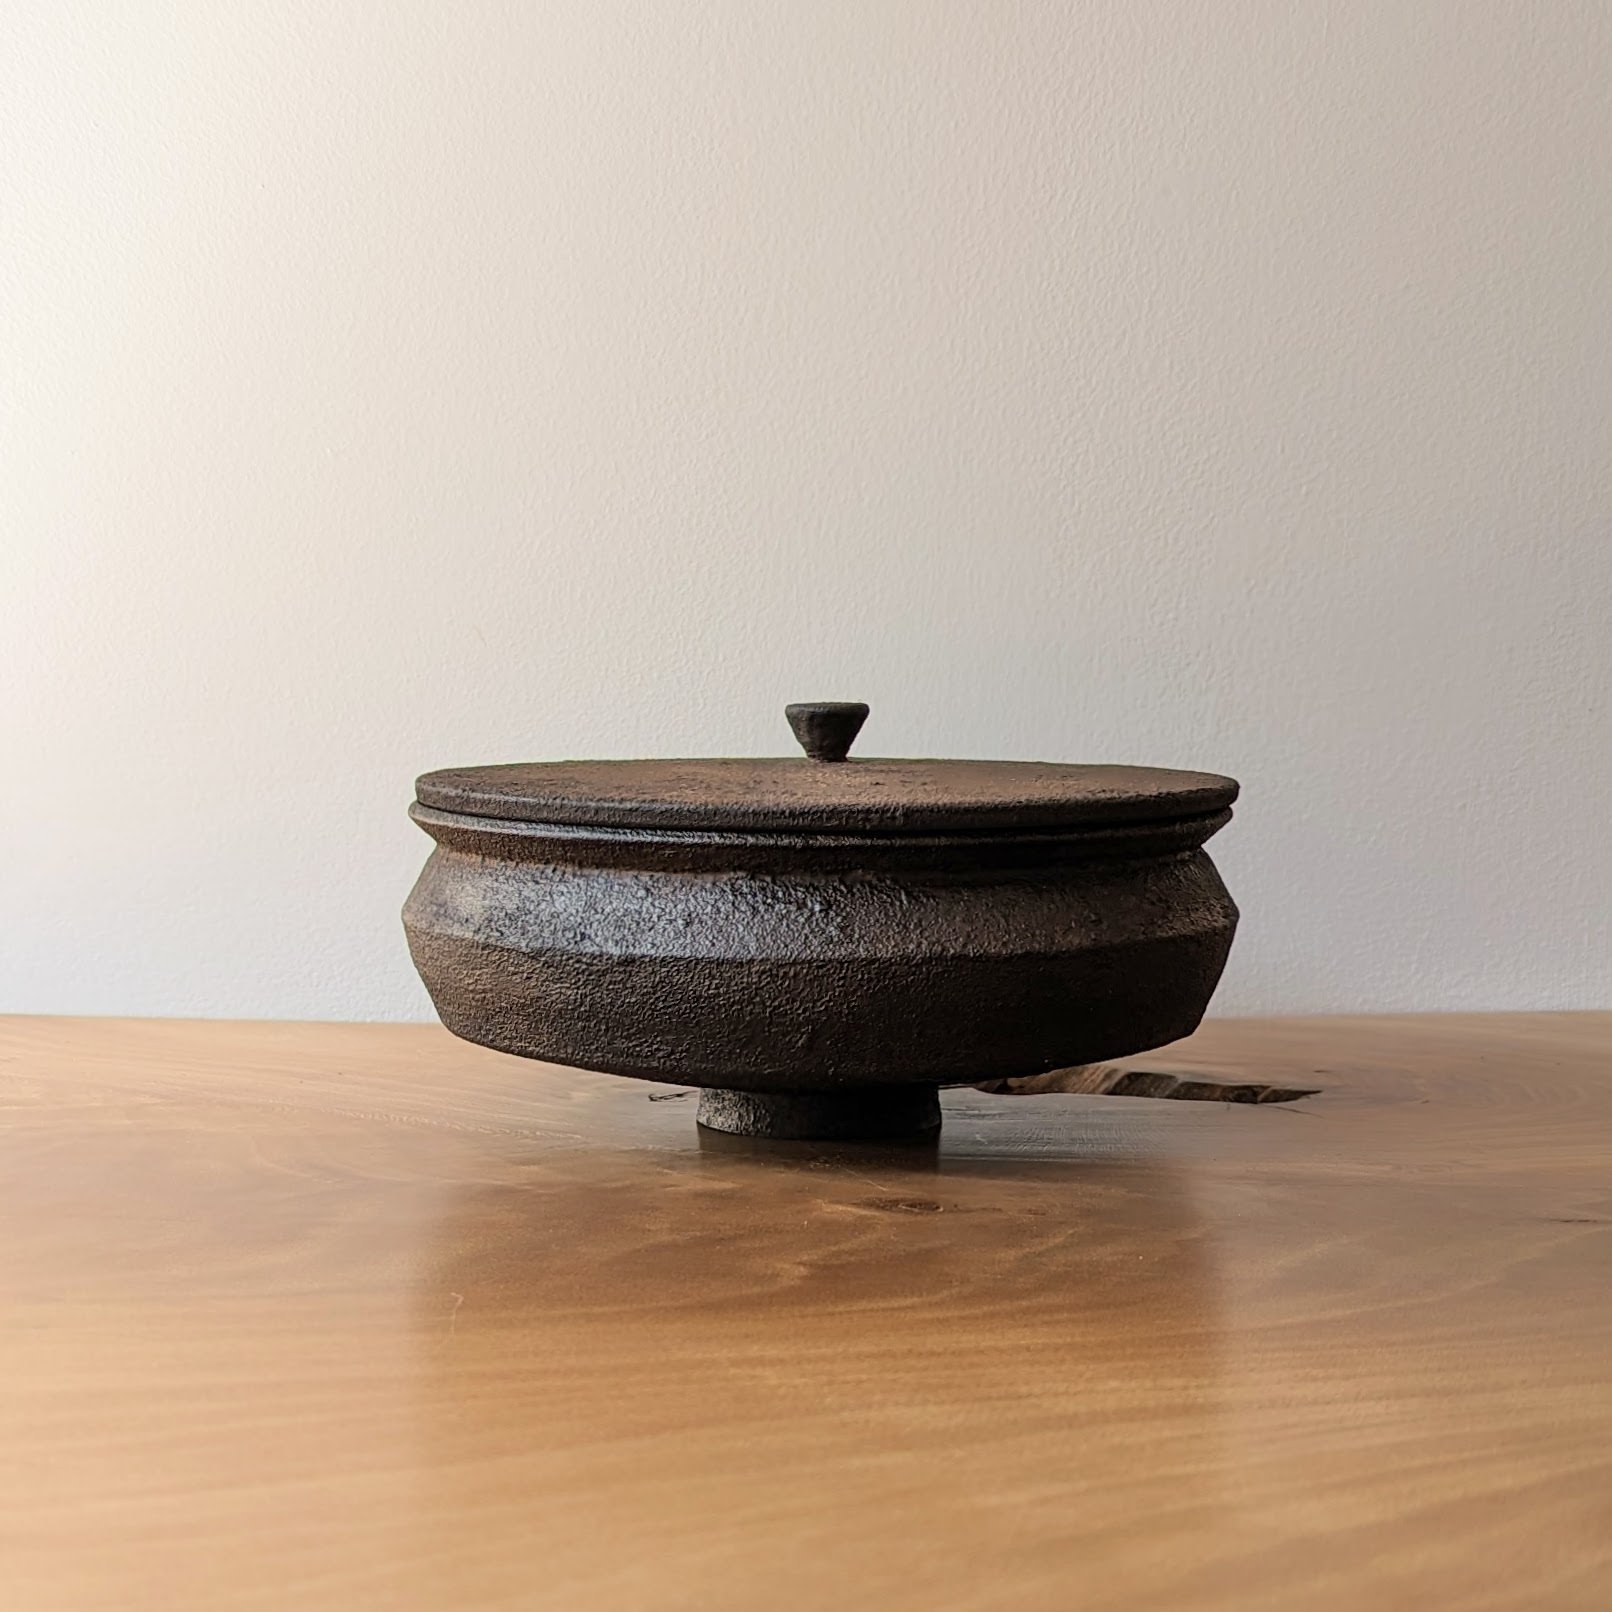 Dark wooden vessel with lid